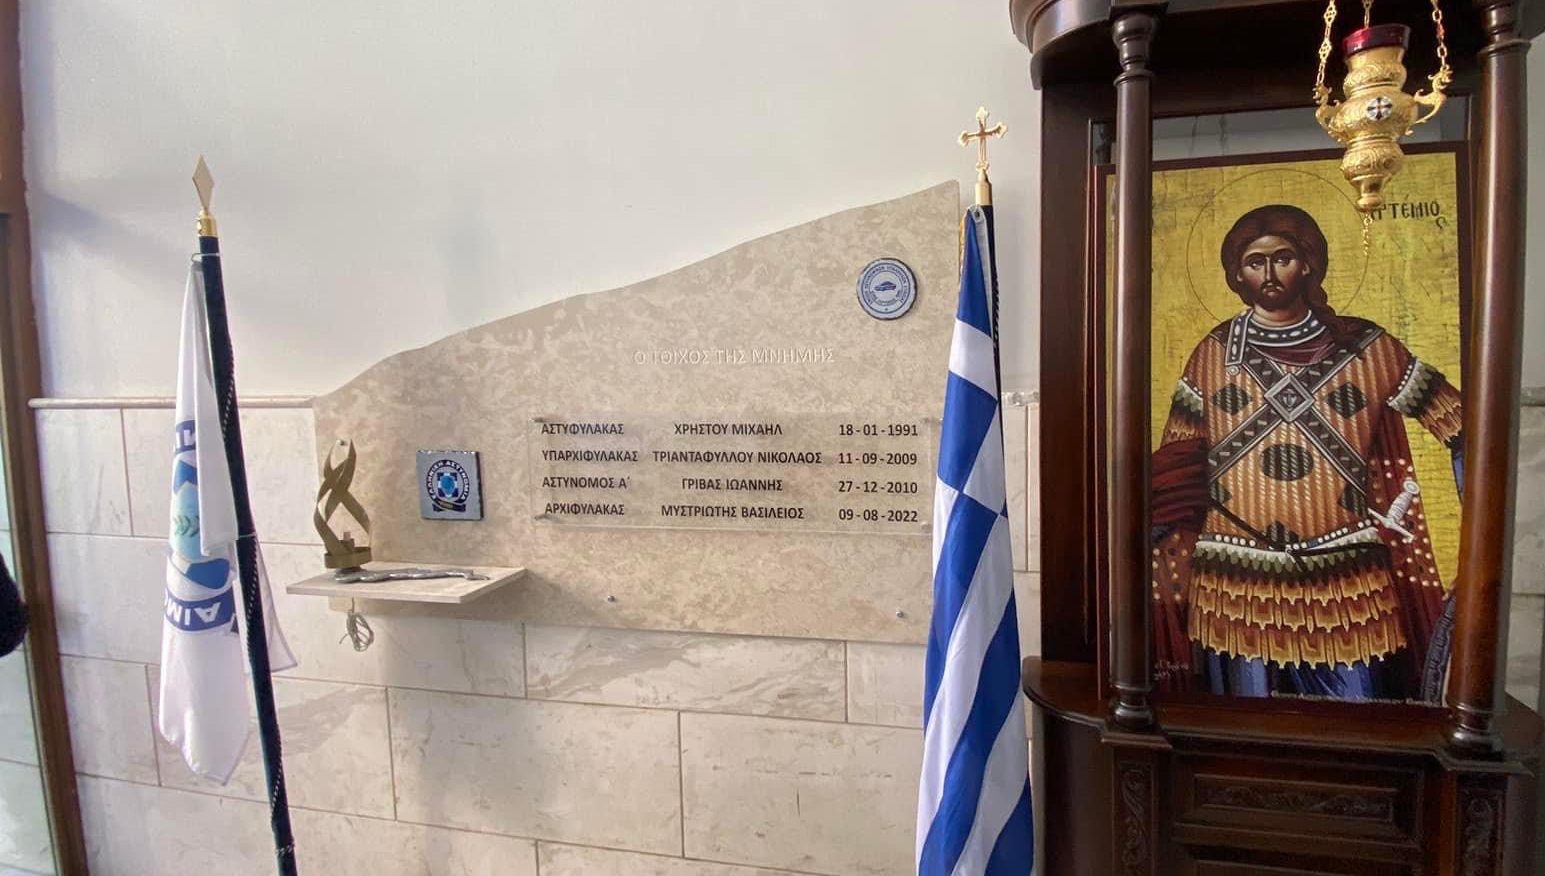 Οι αστυνομικοί της Εύβοιας τελούν επιμνημόσυνη δέηση για τους πεσόντες συναδέλφους τους